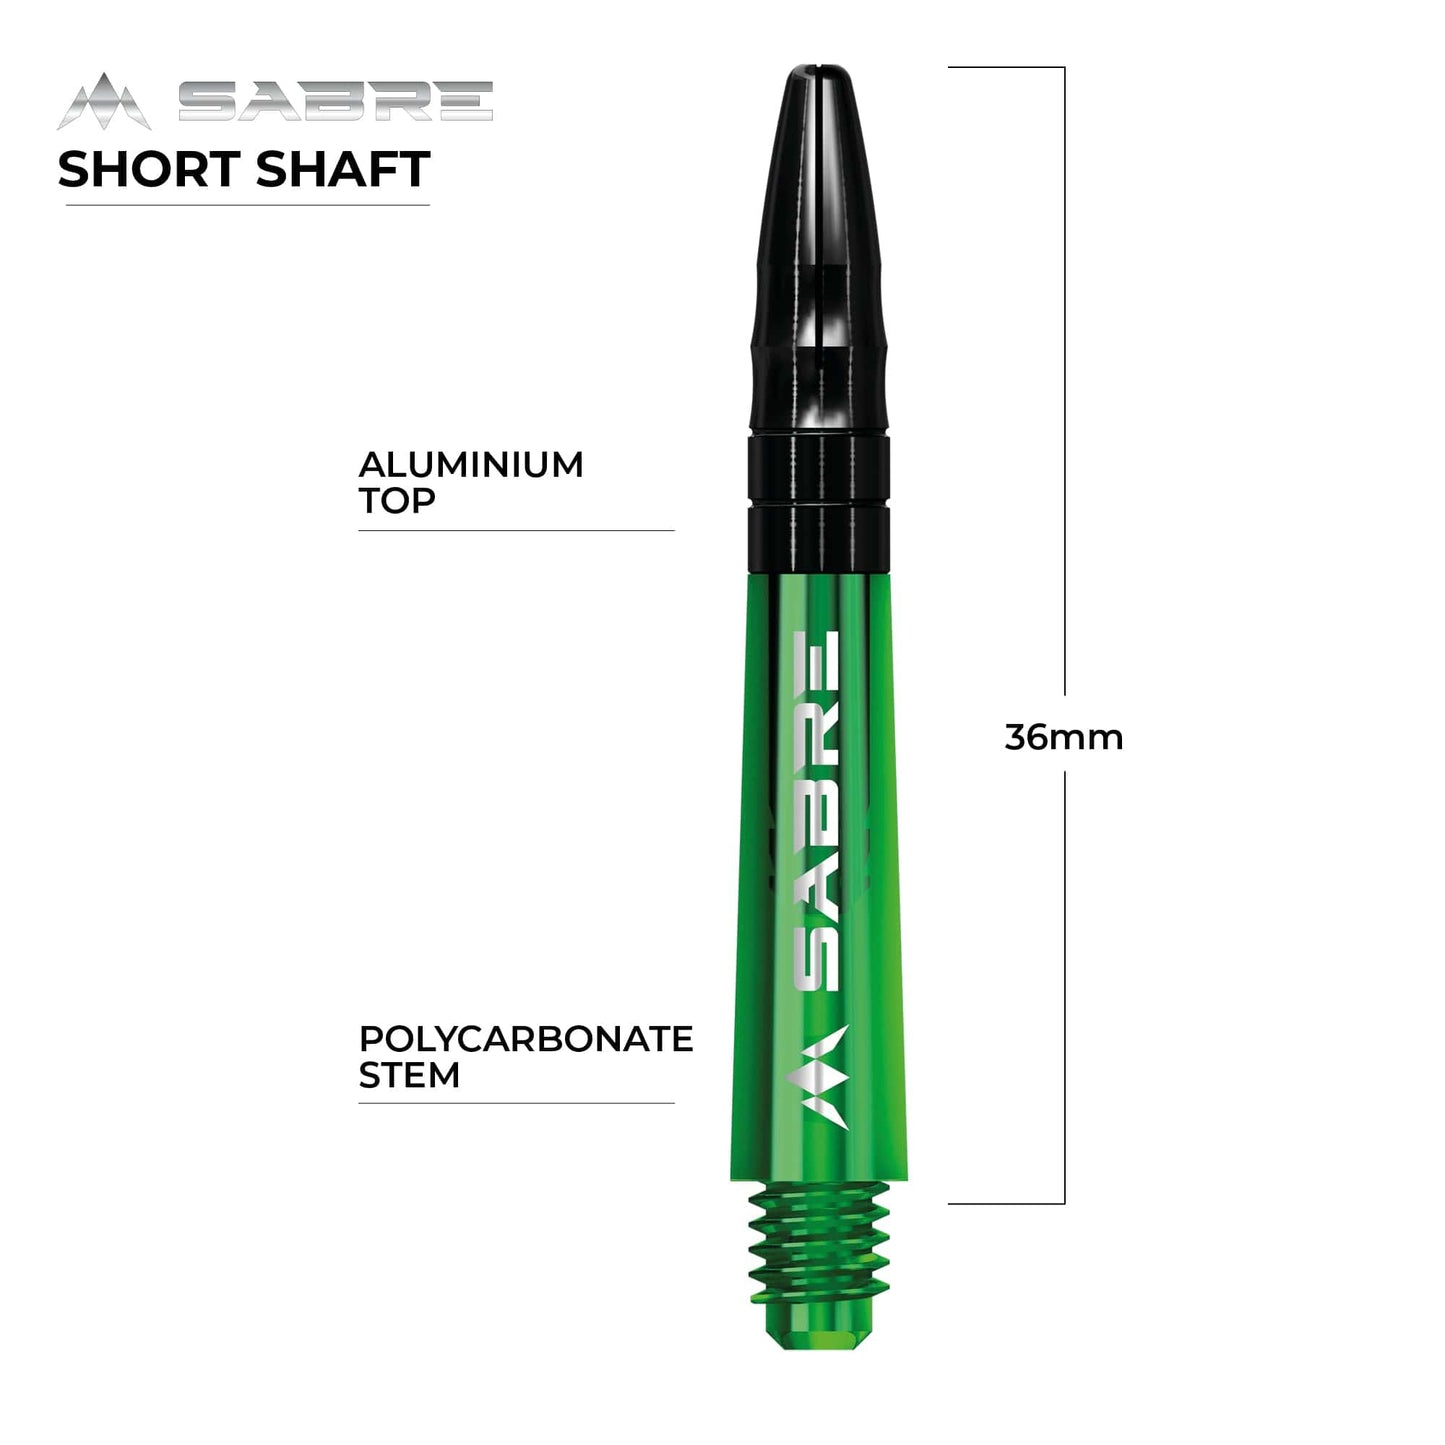 Mission Sabre Shafts - Polycarbonate Dart Stems - Green - Black Top